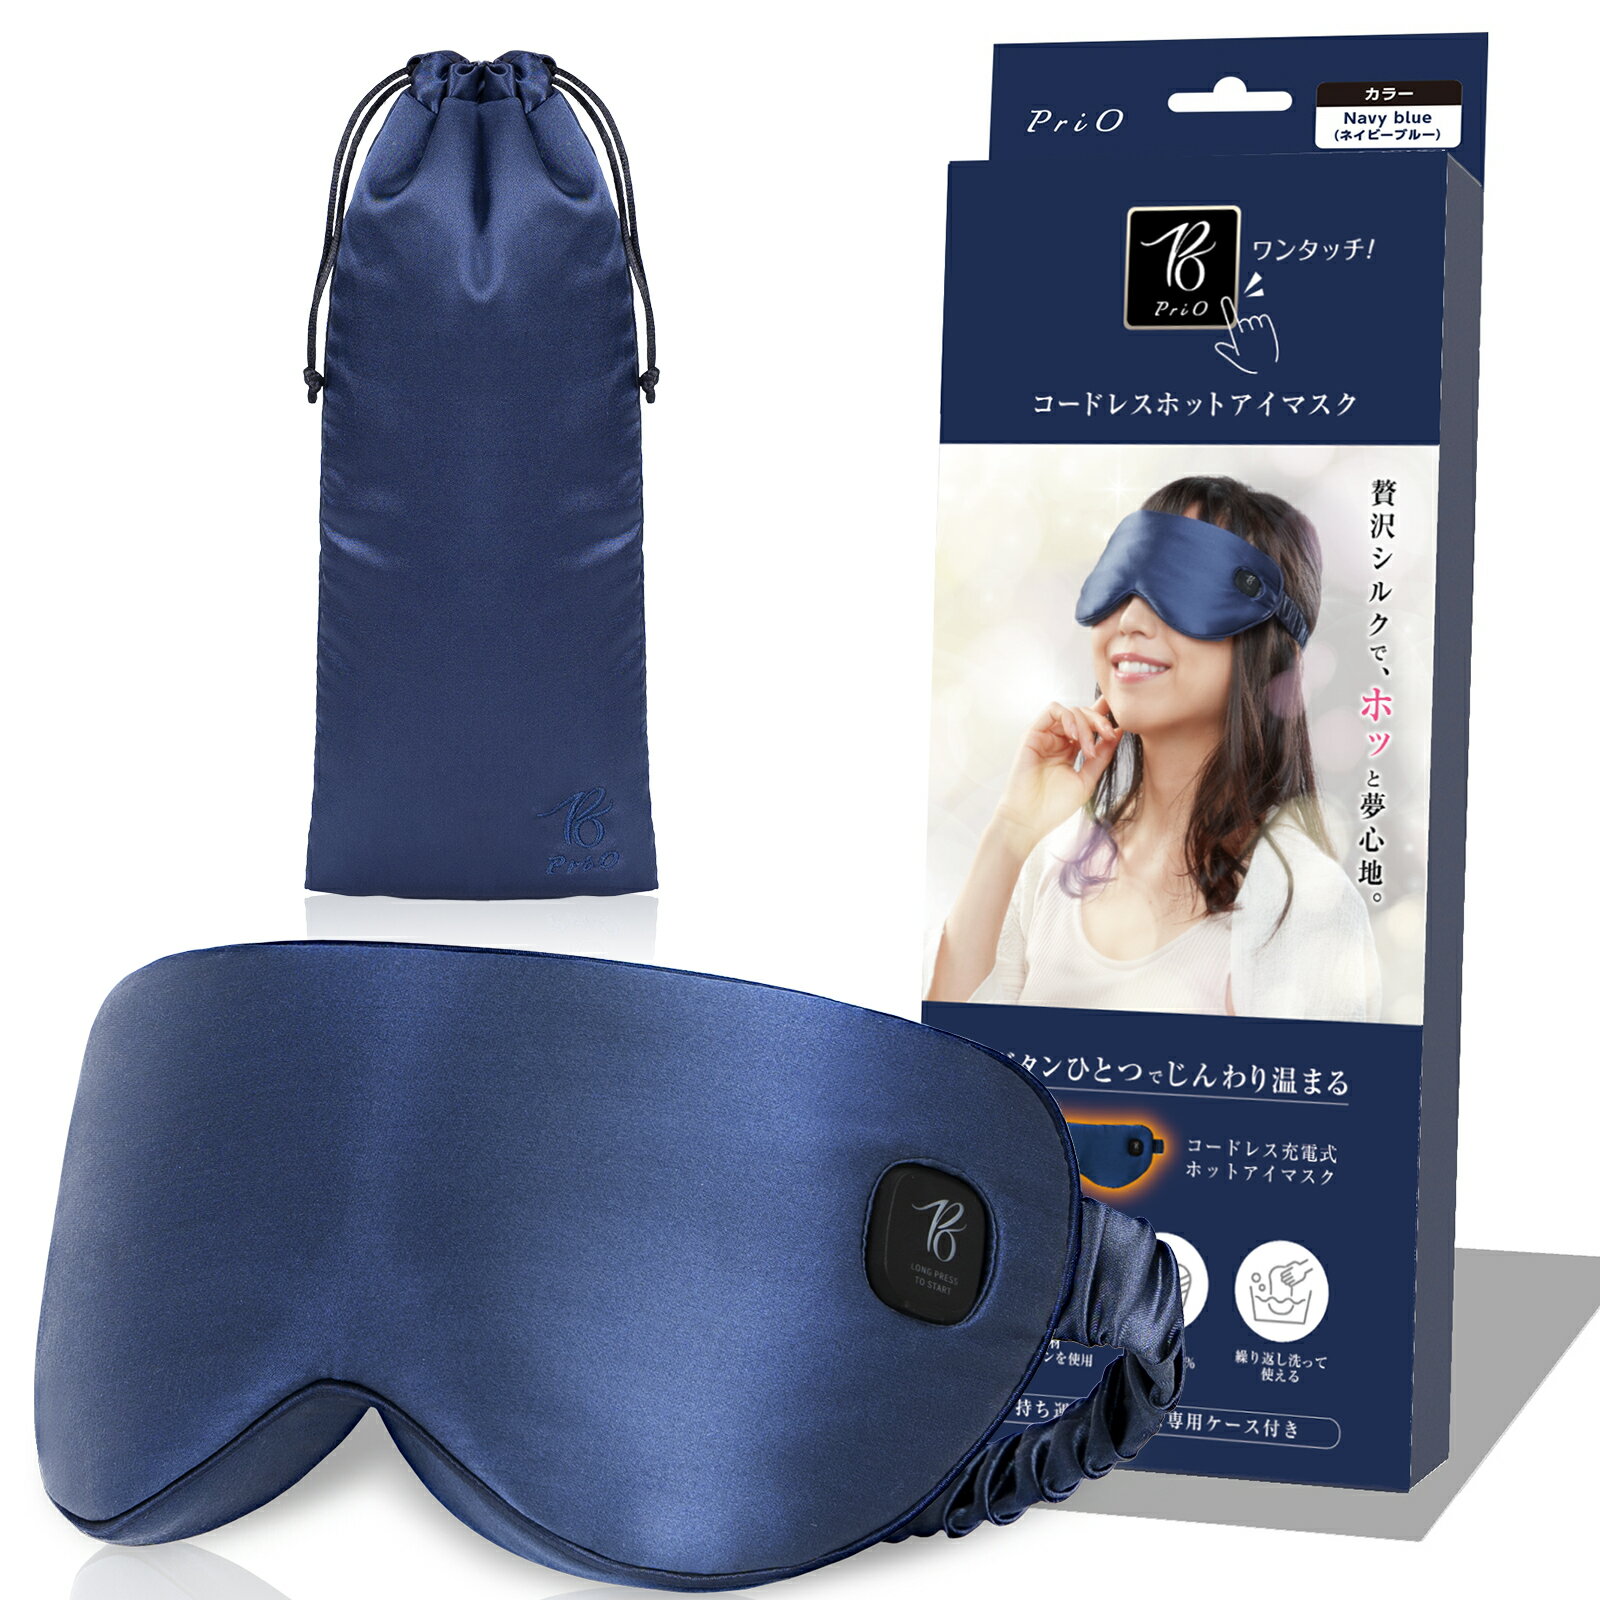 目の疲れに コードレスホットアイマスク シルク100 アイマスク シルク 目元ケア 睡眠 眼精疲労 くまとり リラックス ドライアイ USB 充電式 繰り返し使える 男女兼用 旅行 機内 クリスマス 持ち運びに便利なケース付き